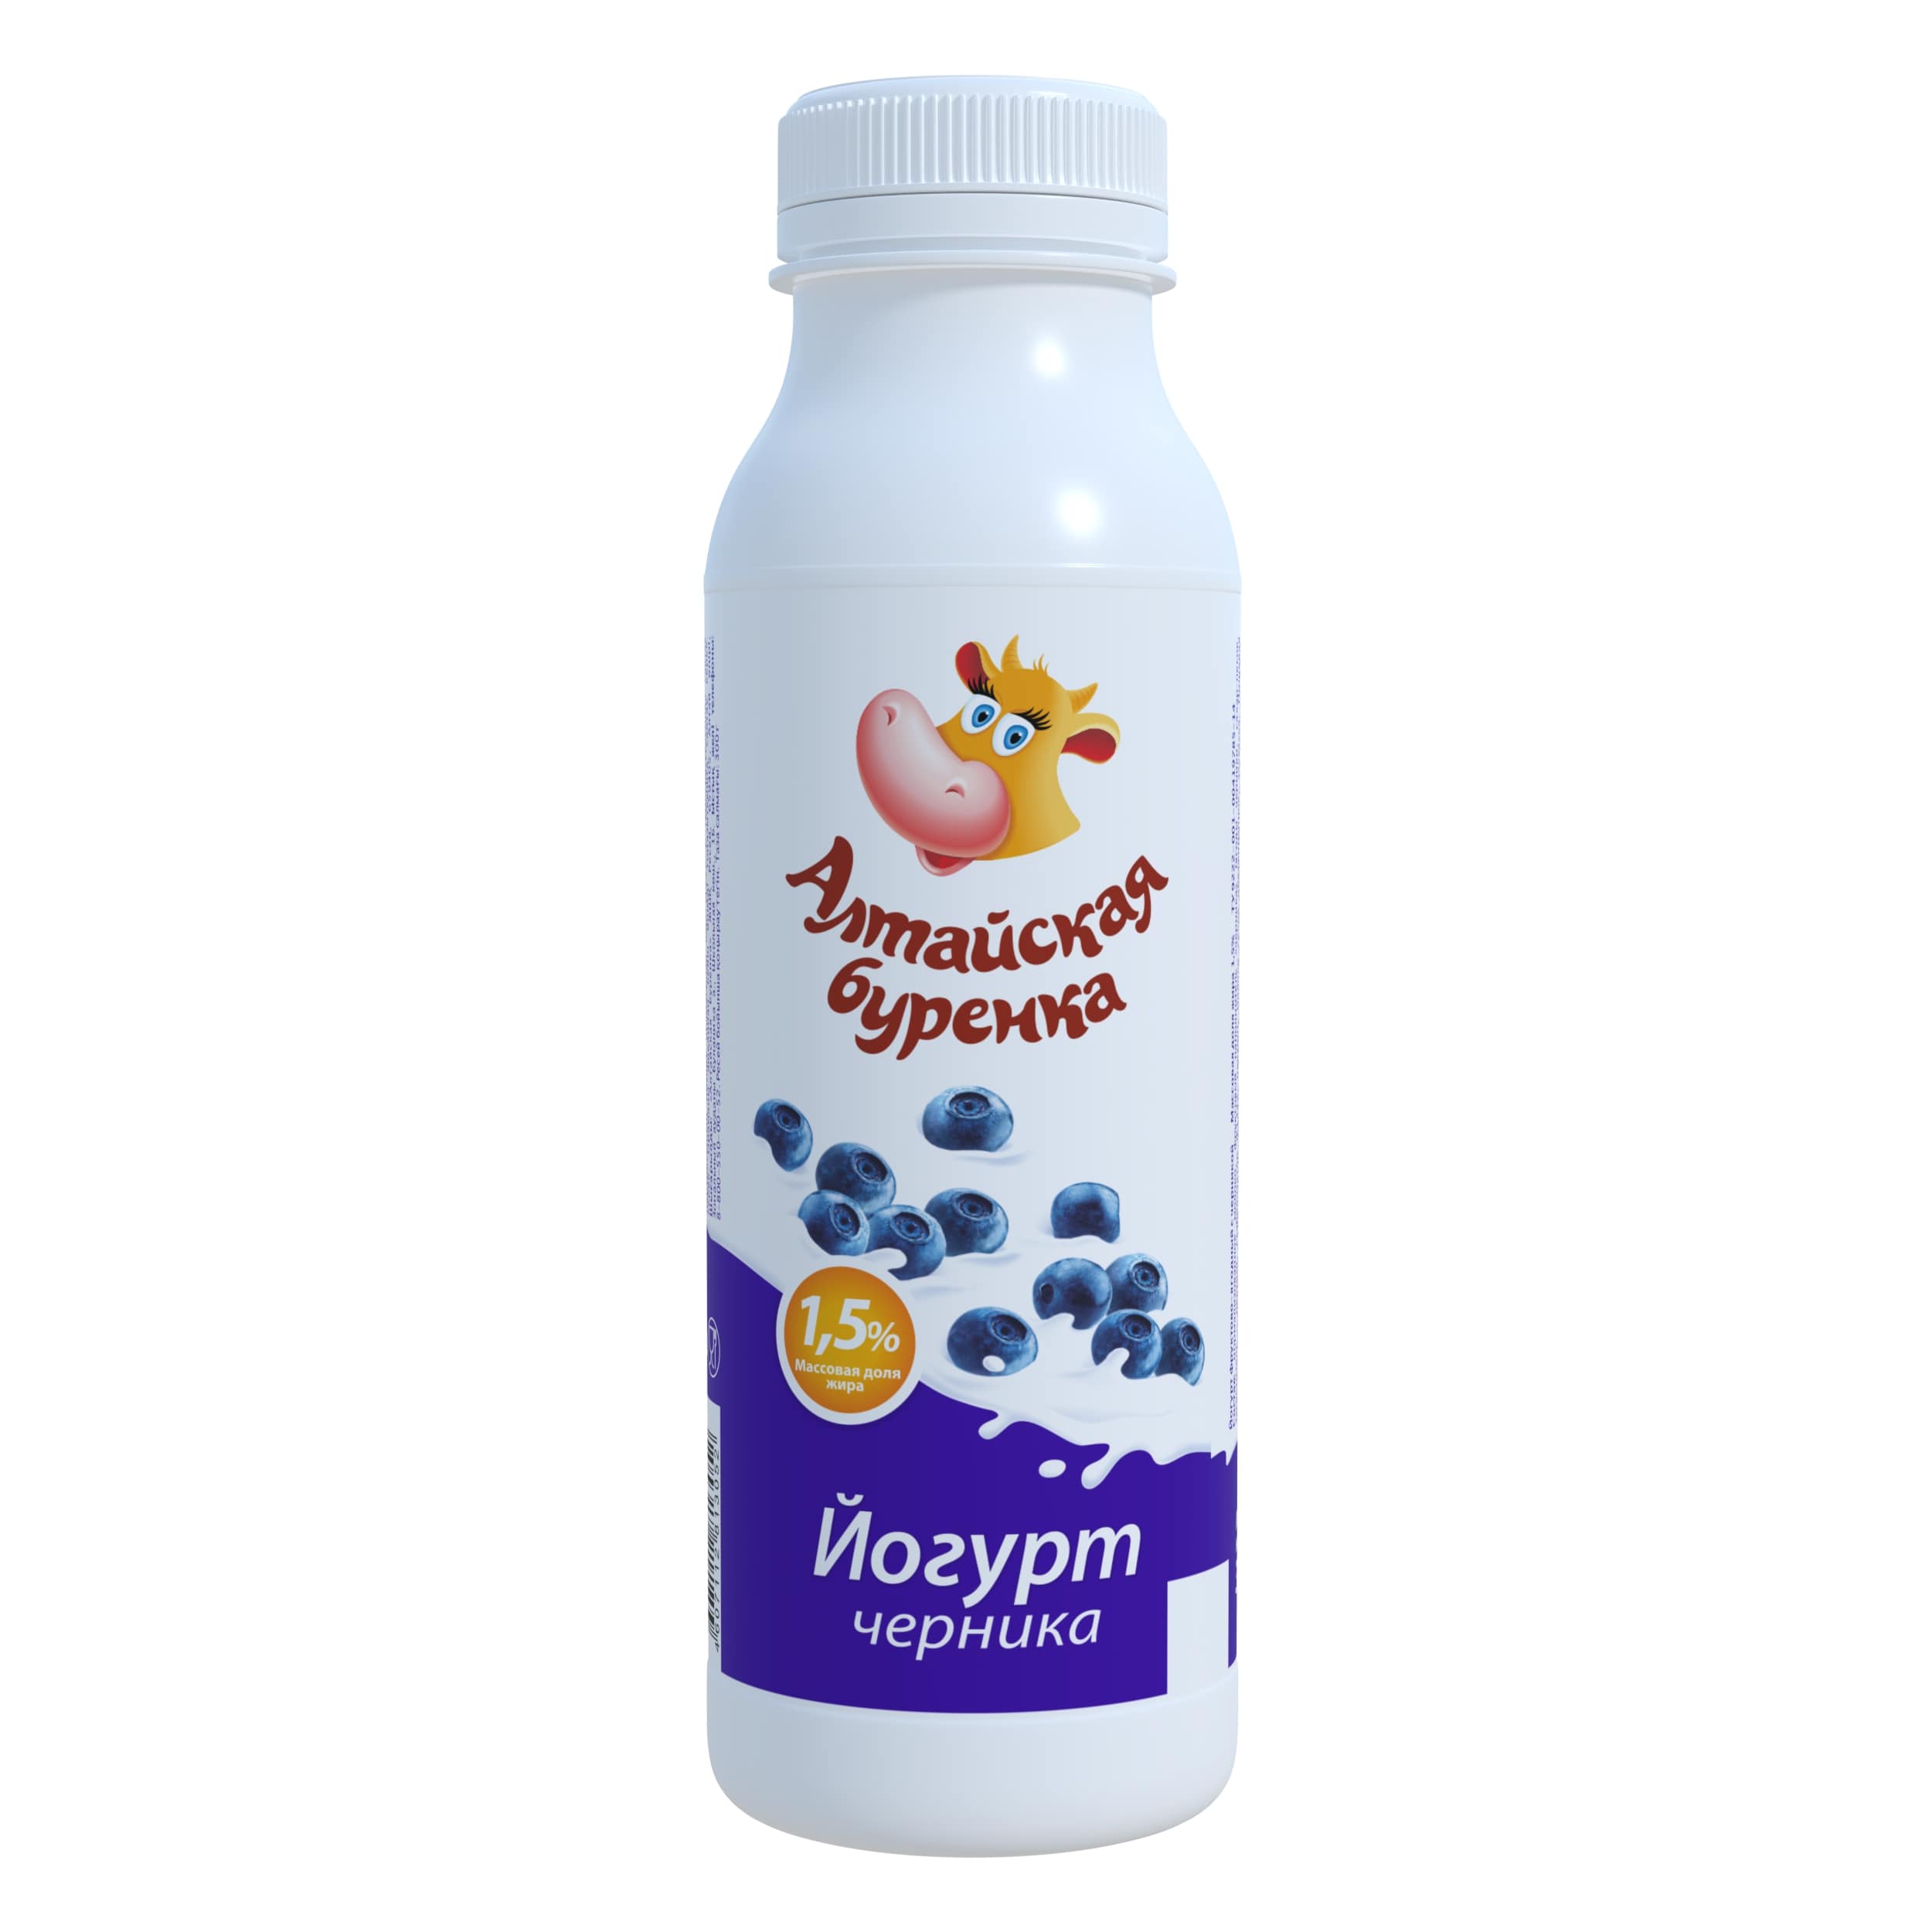 Йогурт фруктово-ягодный с черникой 1,5% Алтайская Буренка 